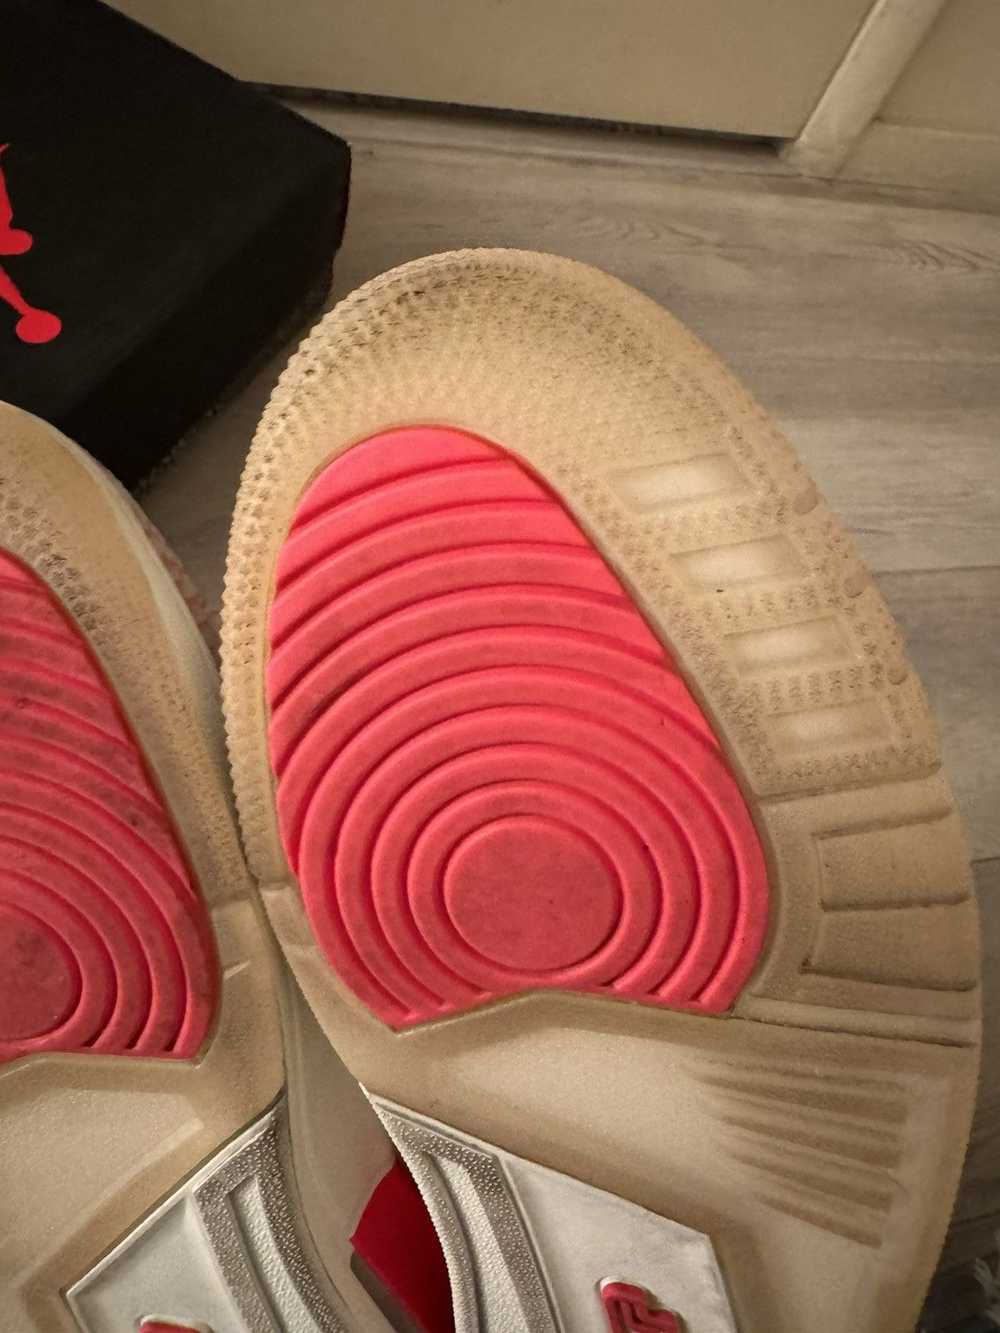 Jordan Brand × Nike Air Jordan 3 “Rust Pink” - image 7